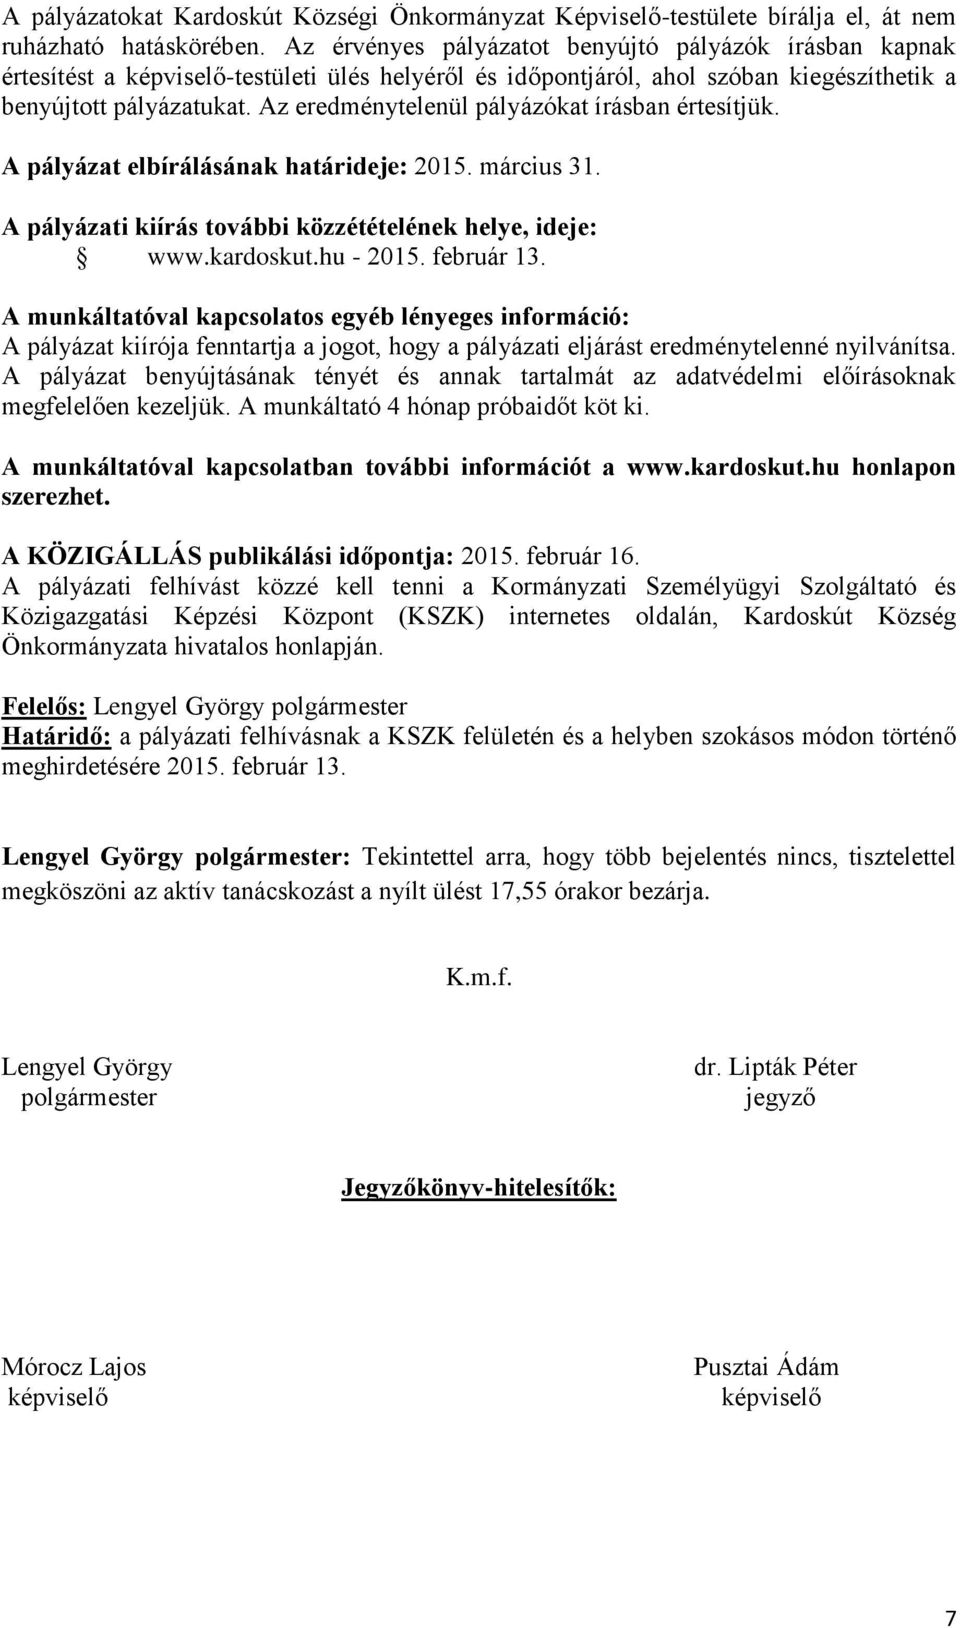 Az eredménytelenül pályázókat írásban értesítjük. A pályázat elbírálásának határideje: 2015. március 31. A pályázati kiírás további közzétételének helye, ideje: www.kardoskut.hu - 2015. február 13.